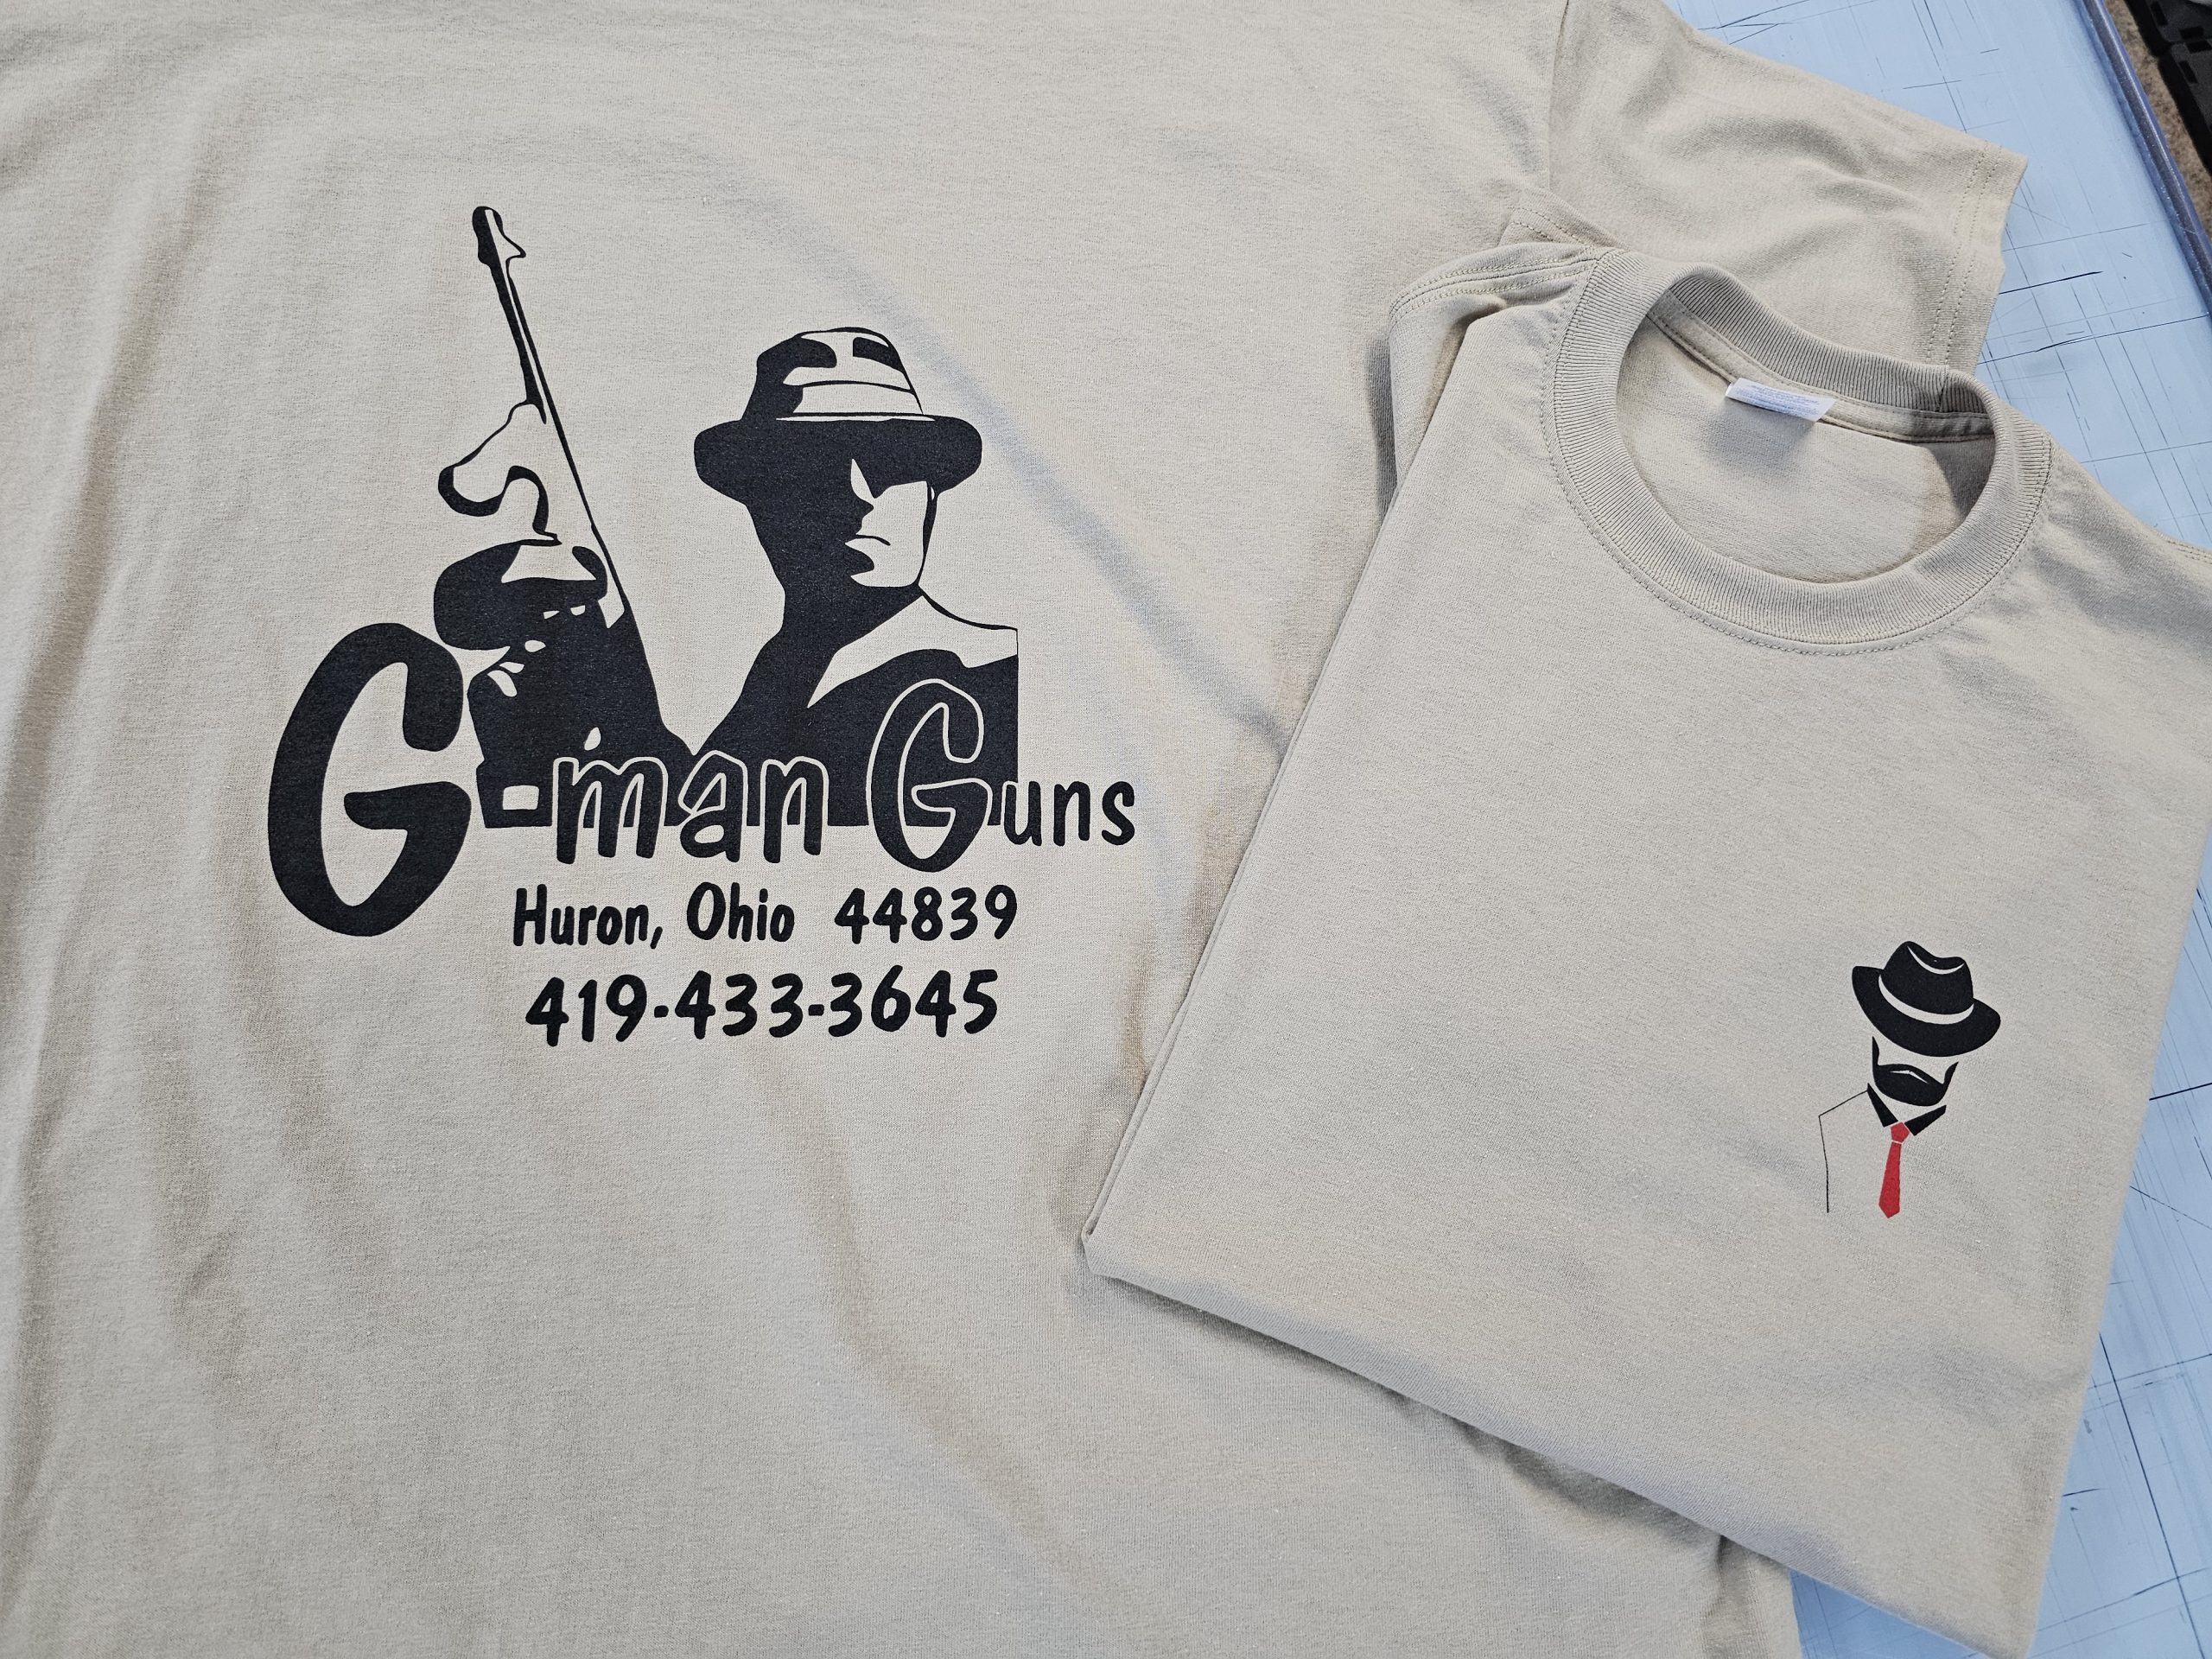 Meyer Gmans Guns Shirts